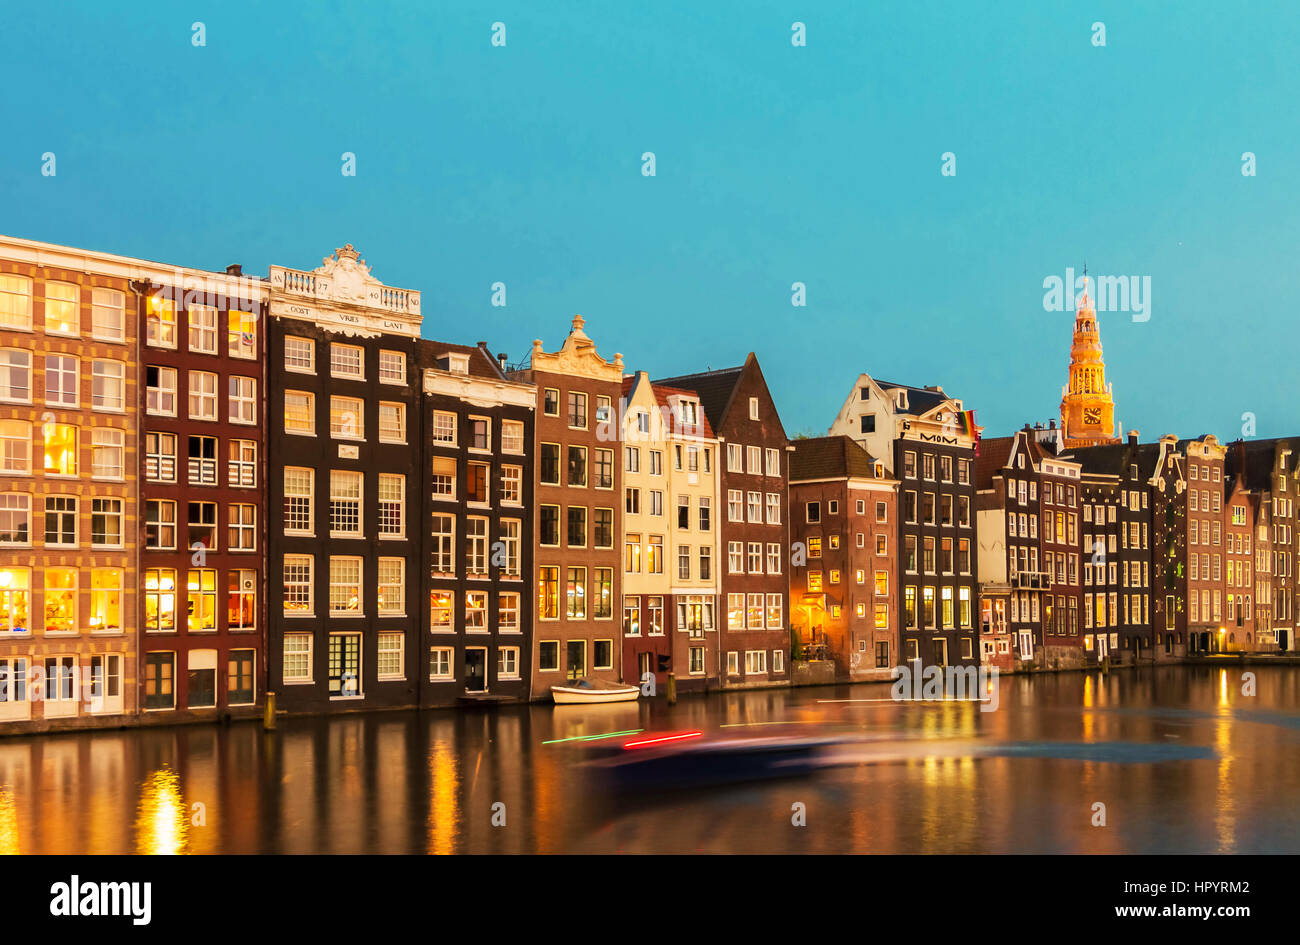 Facciate di case su canal con riflessioni illuminata di notte, Amsterdam, Paesi Bassi. Foto Stock